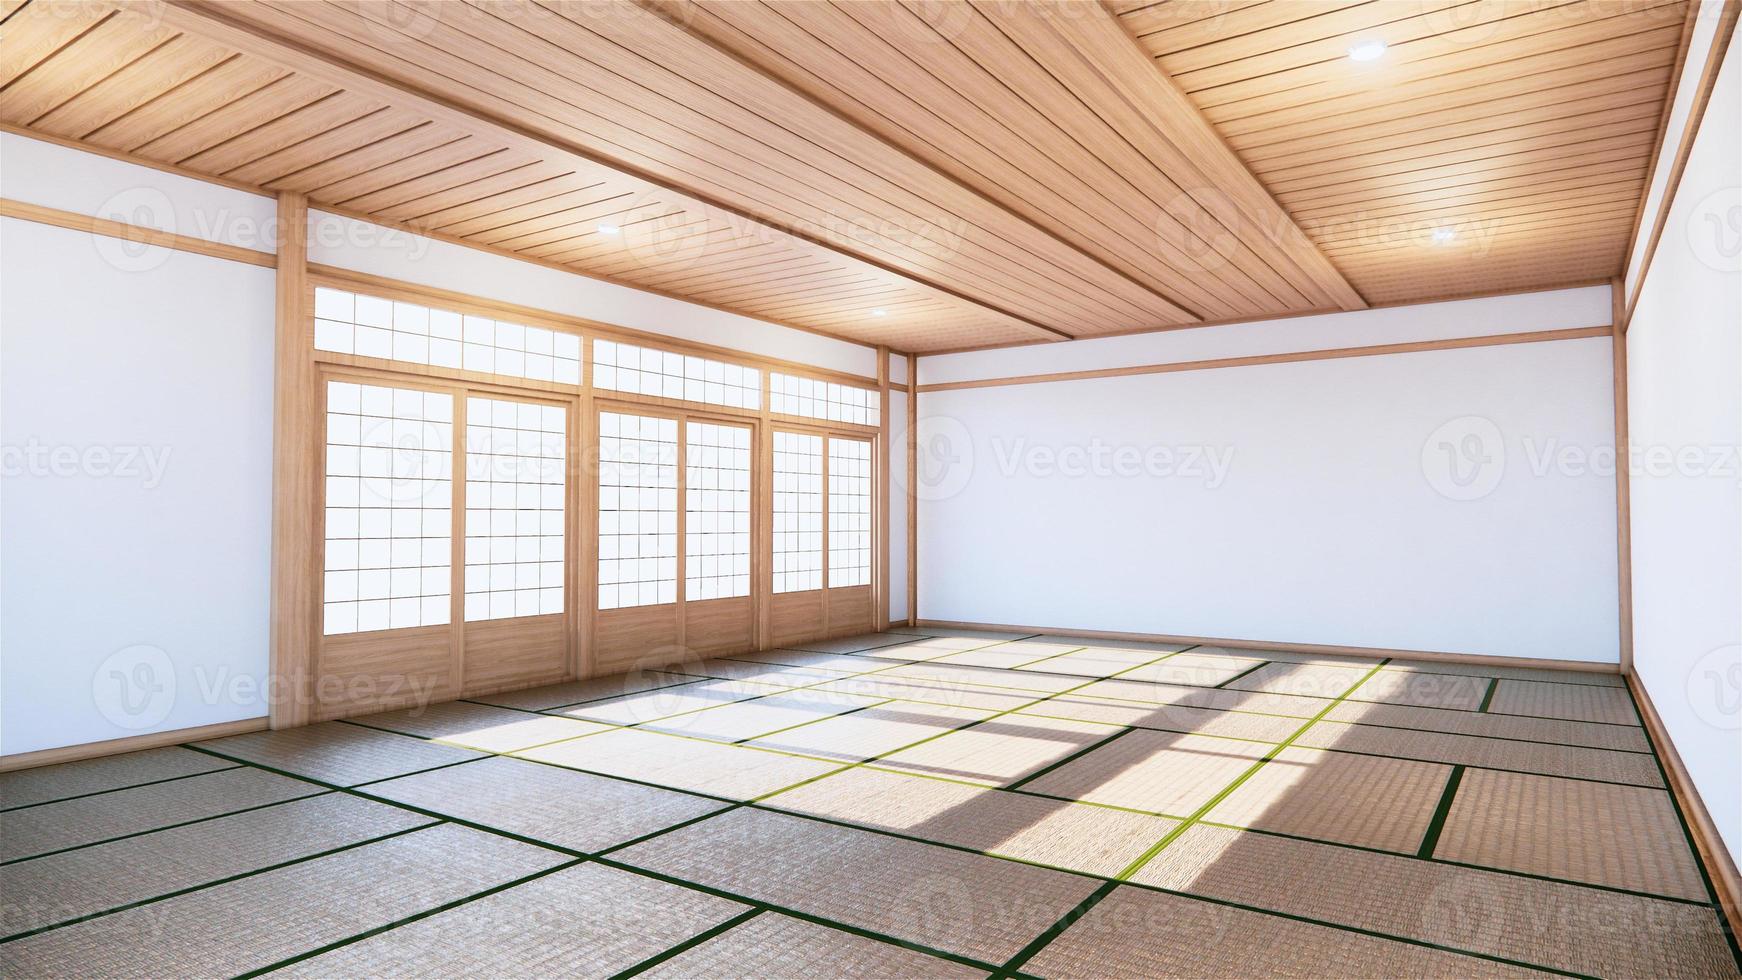 Habitación japonesa estilo interior tropical, gran maqueta interior de habitación vacía Representación 3D foto